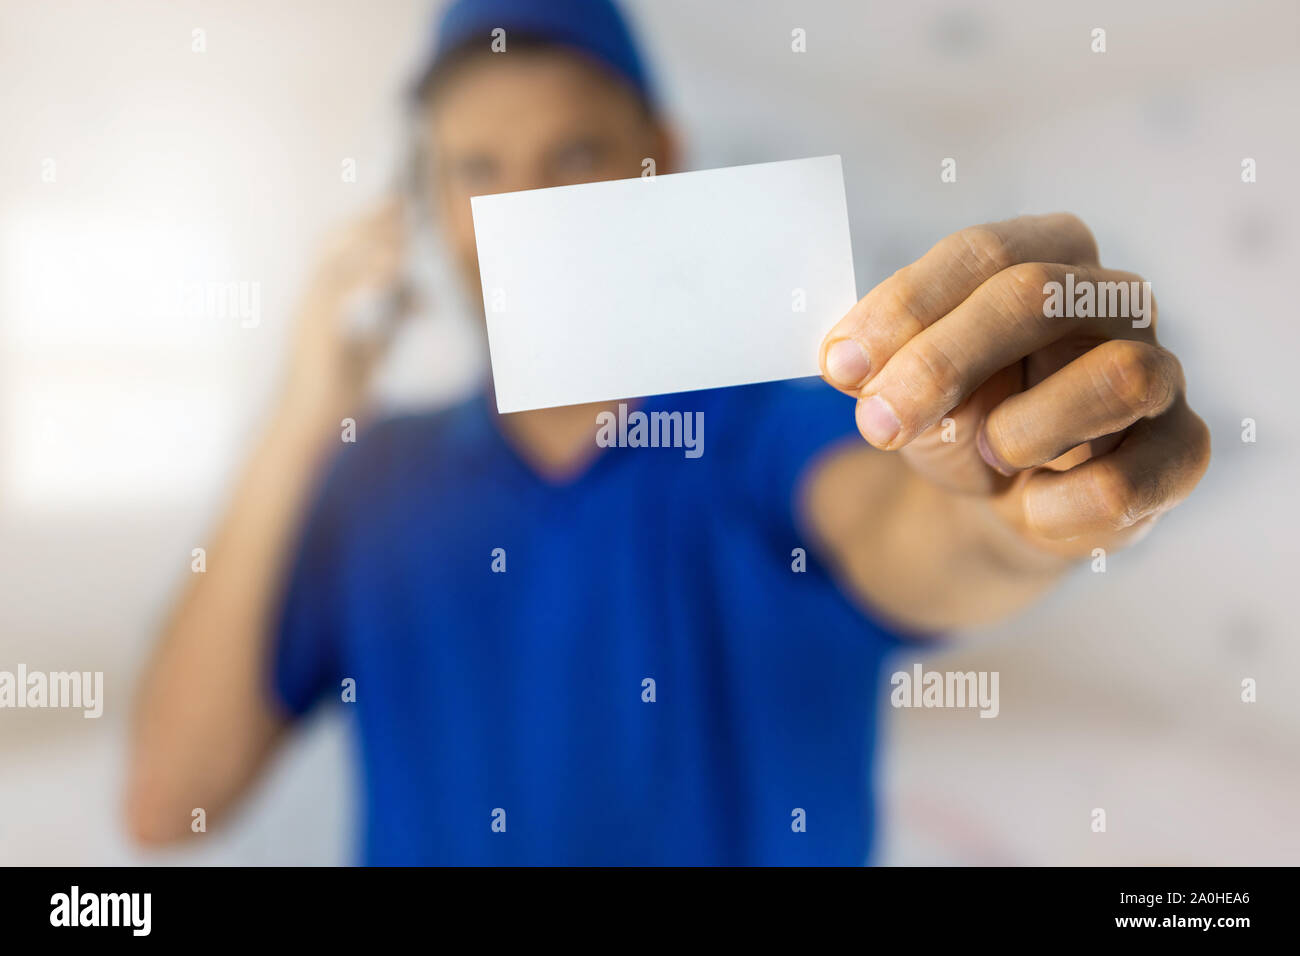 Handyman services - worker showing blank business card et effectuer un appel téléphonique Banque D'Images